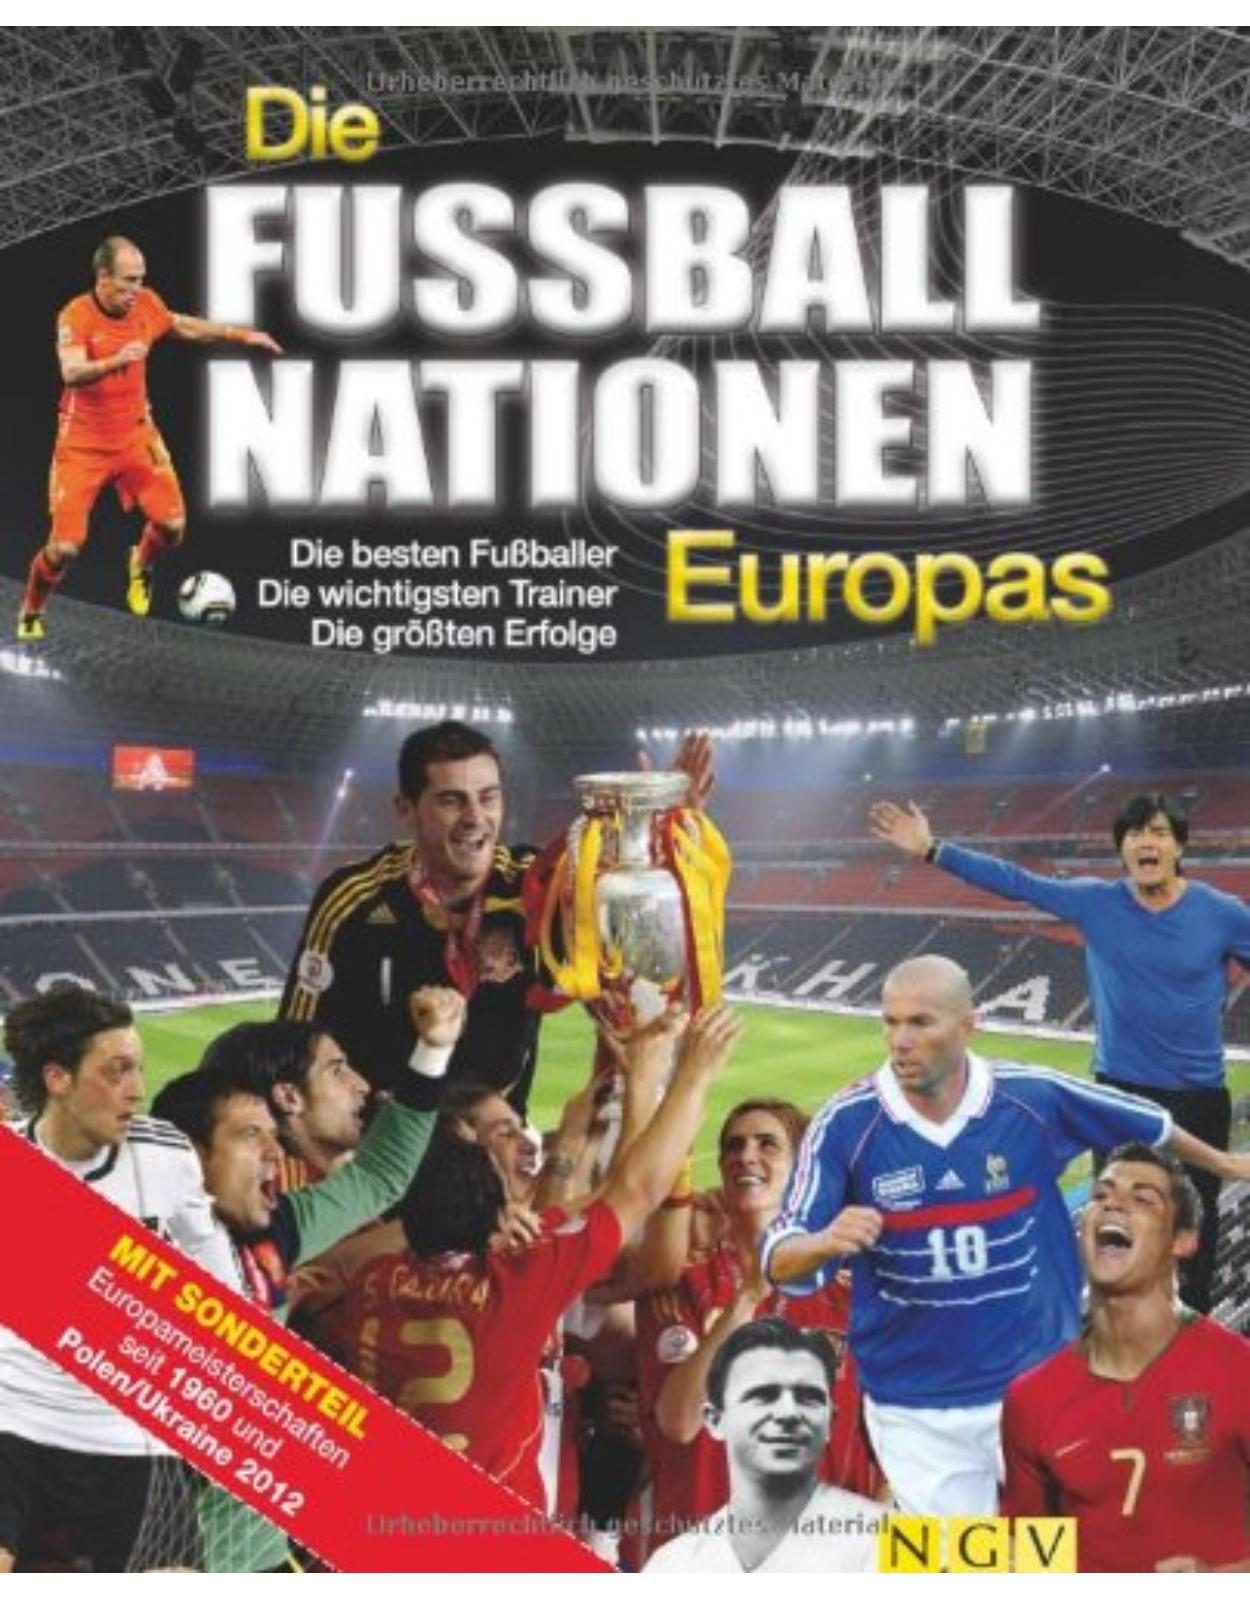 Die Fußballnationen Europas: Die besten Fußballer - Die wichtigsten Trainer - Die größten Erfolge